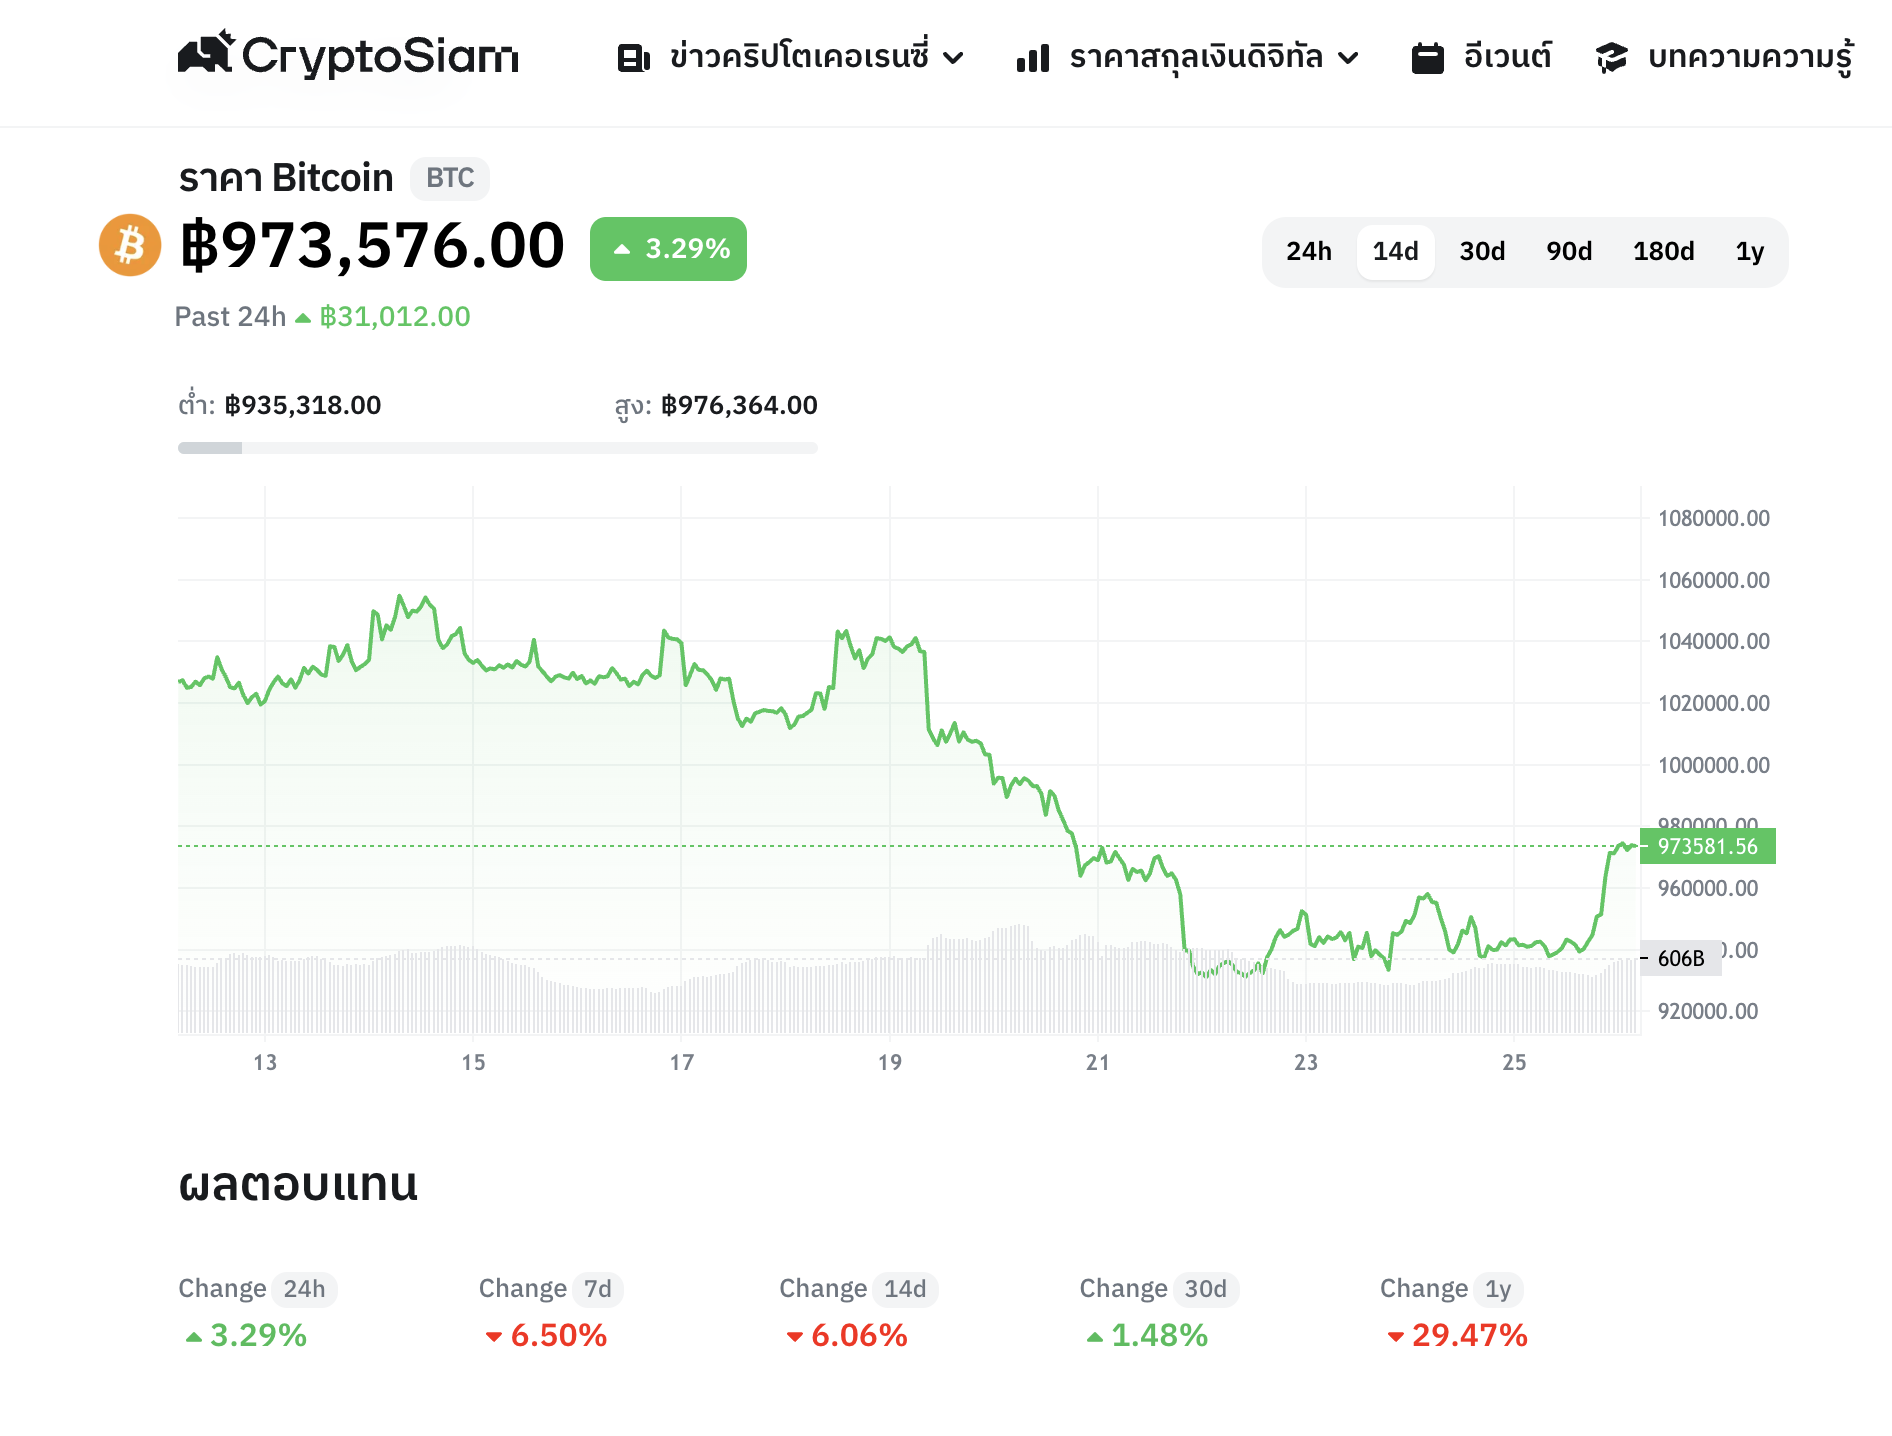 <i>กราฟราคา Bitcoin (BTC) ในรอบ 14 วัน<br>กราฟ/รูปภาพ: CryptoSiam</i>